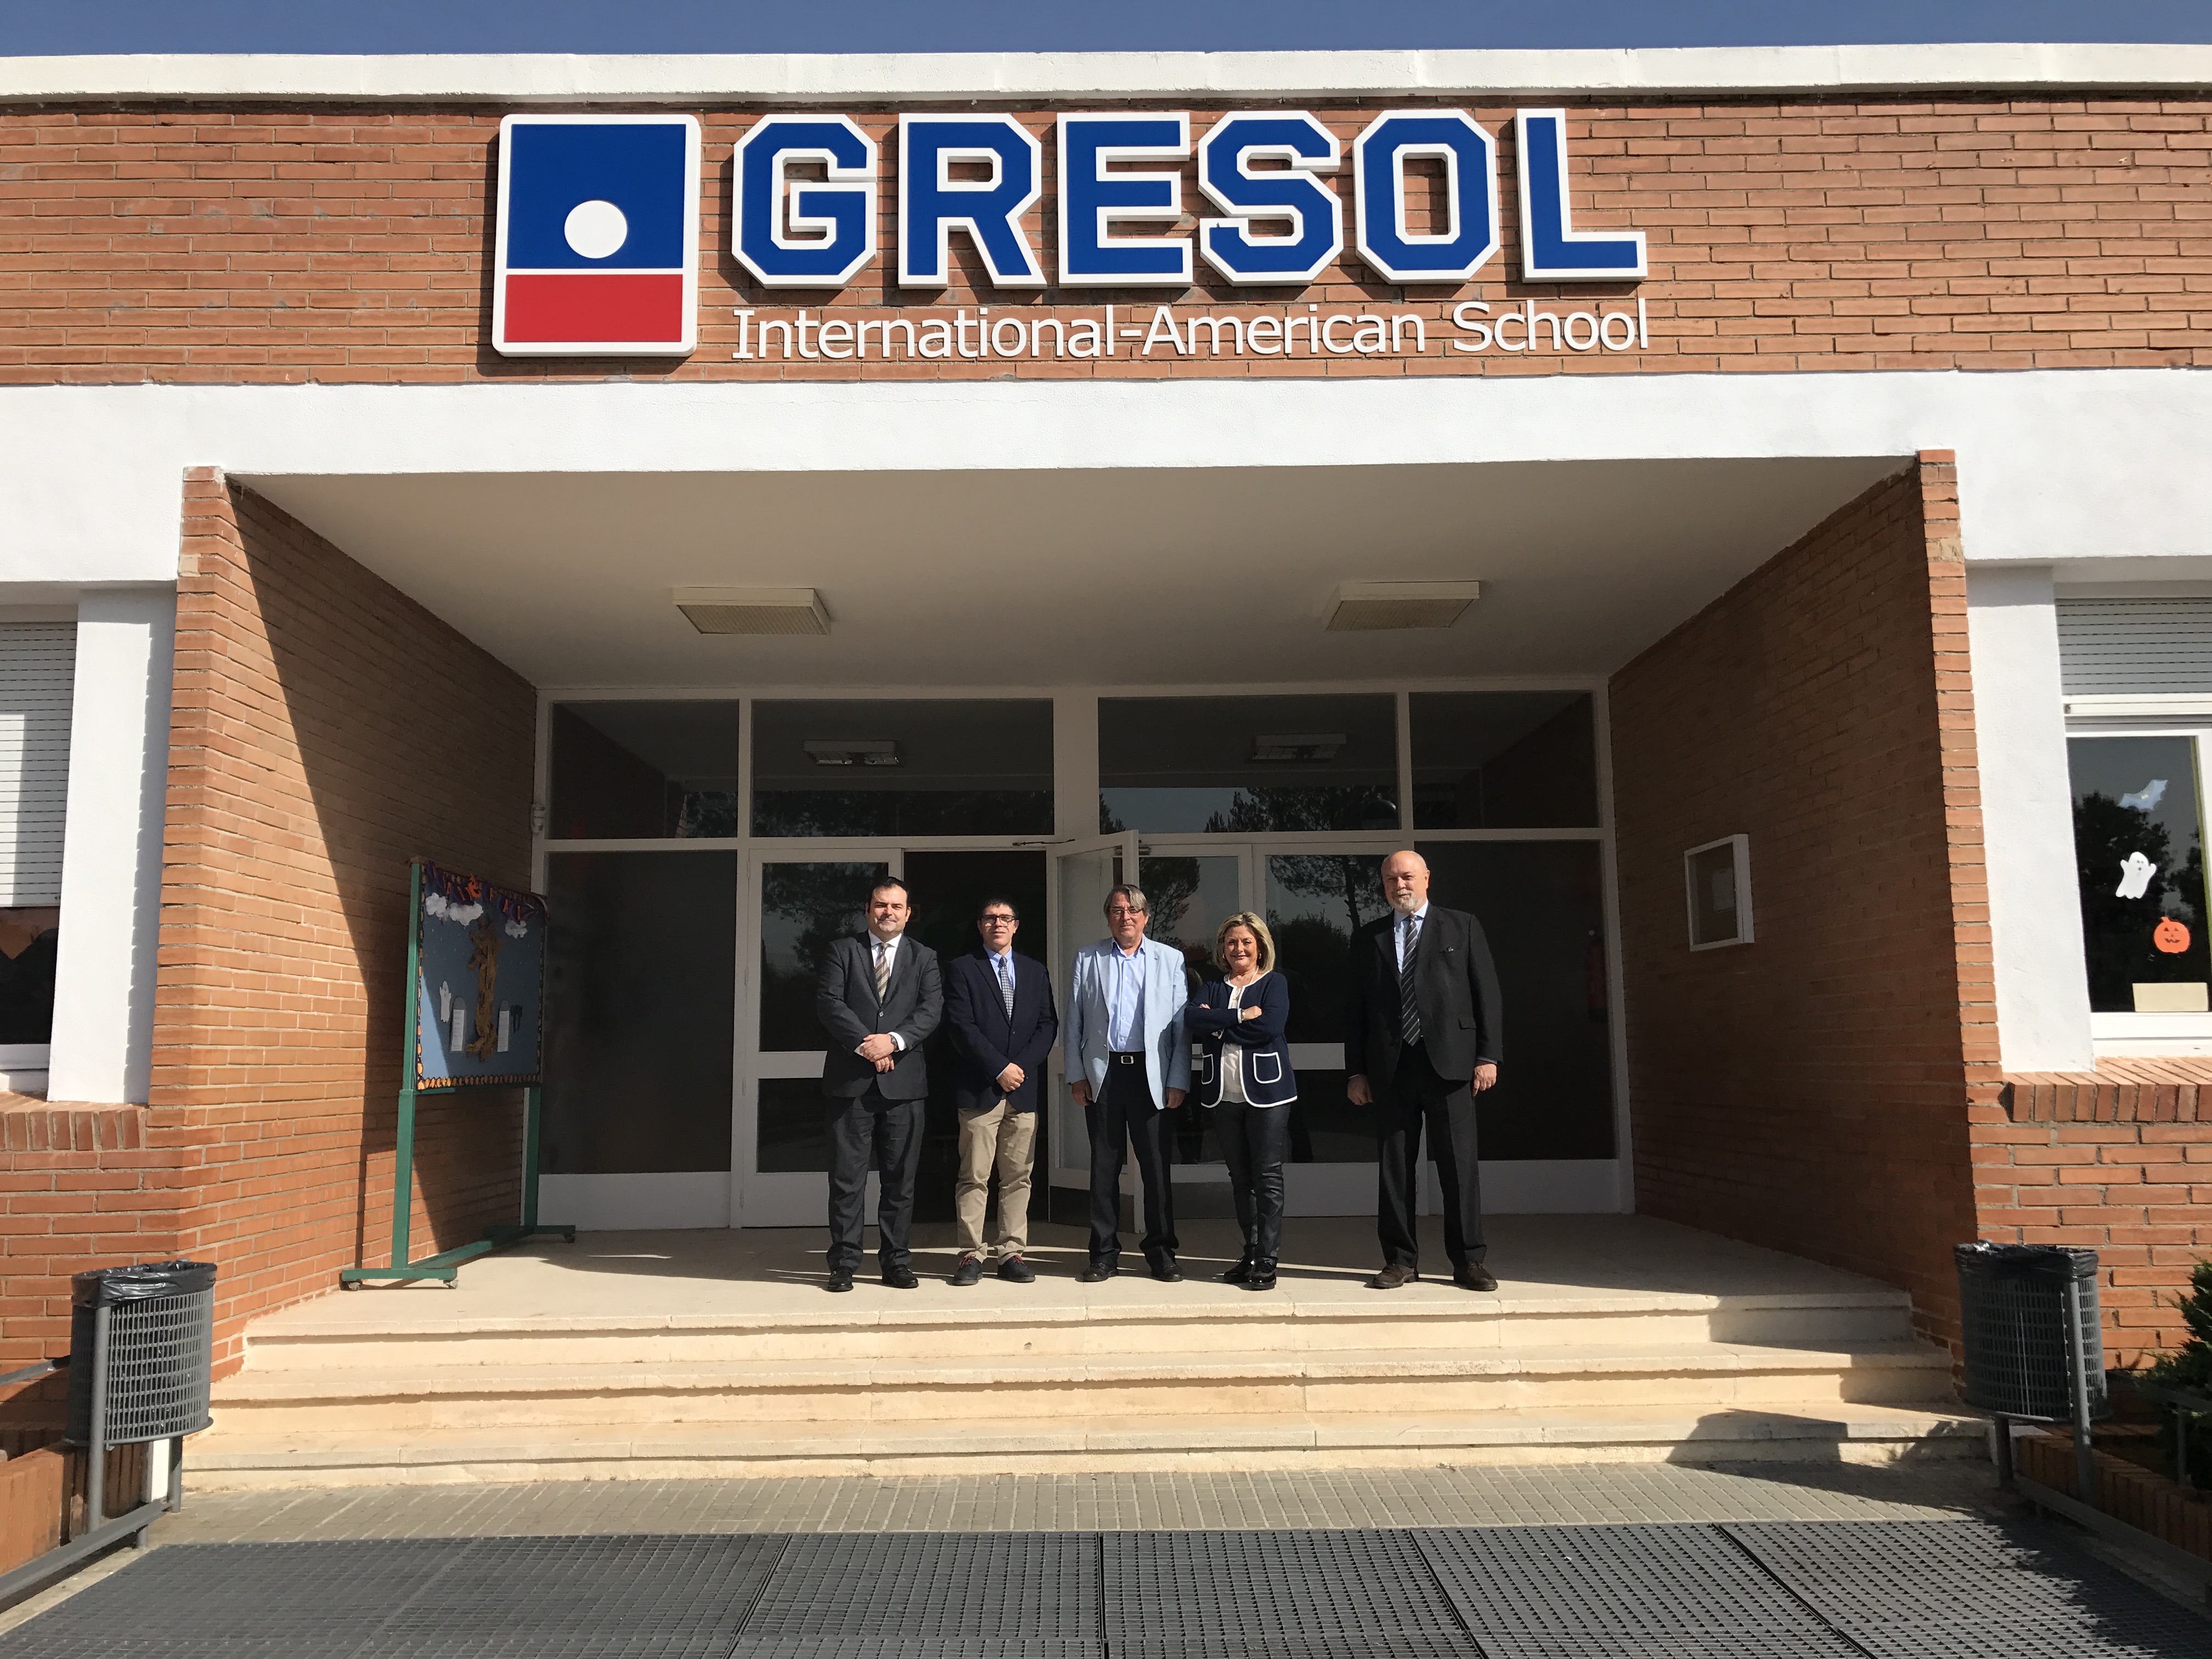 El president de PIMEC Vallès Occidental visita les instal·lacions de Gresol International-American S